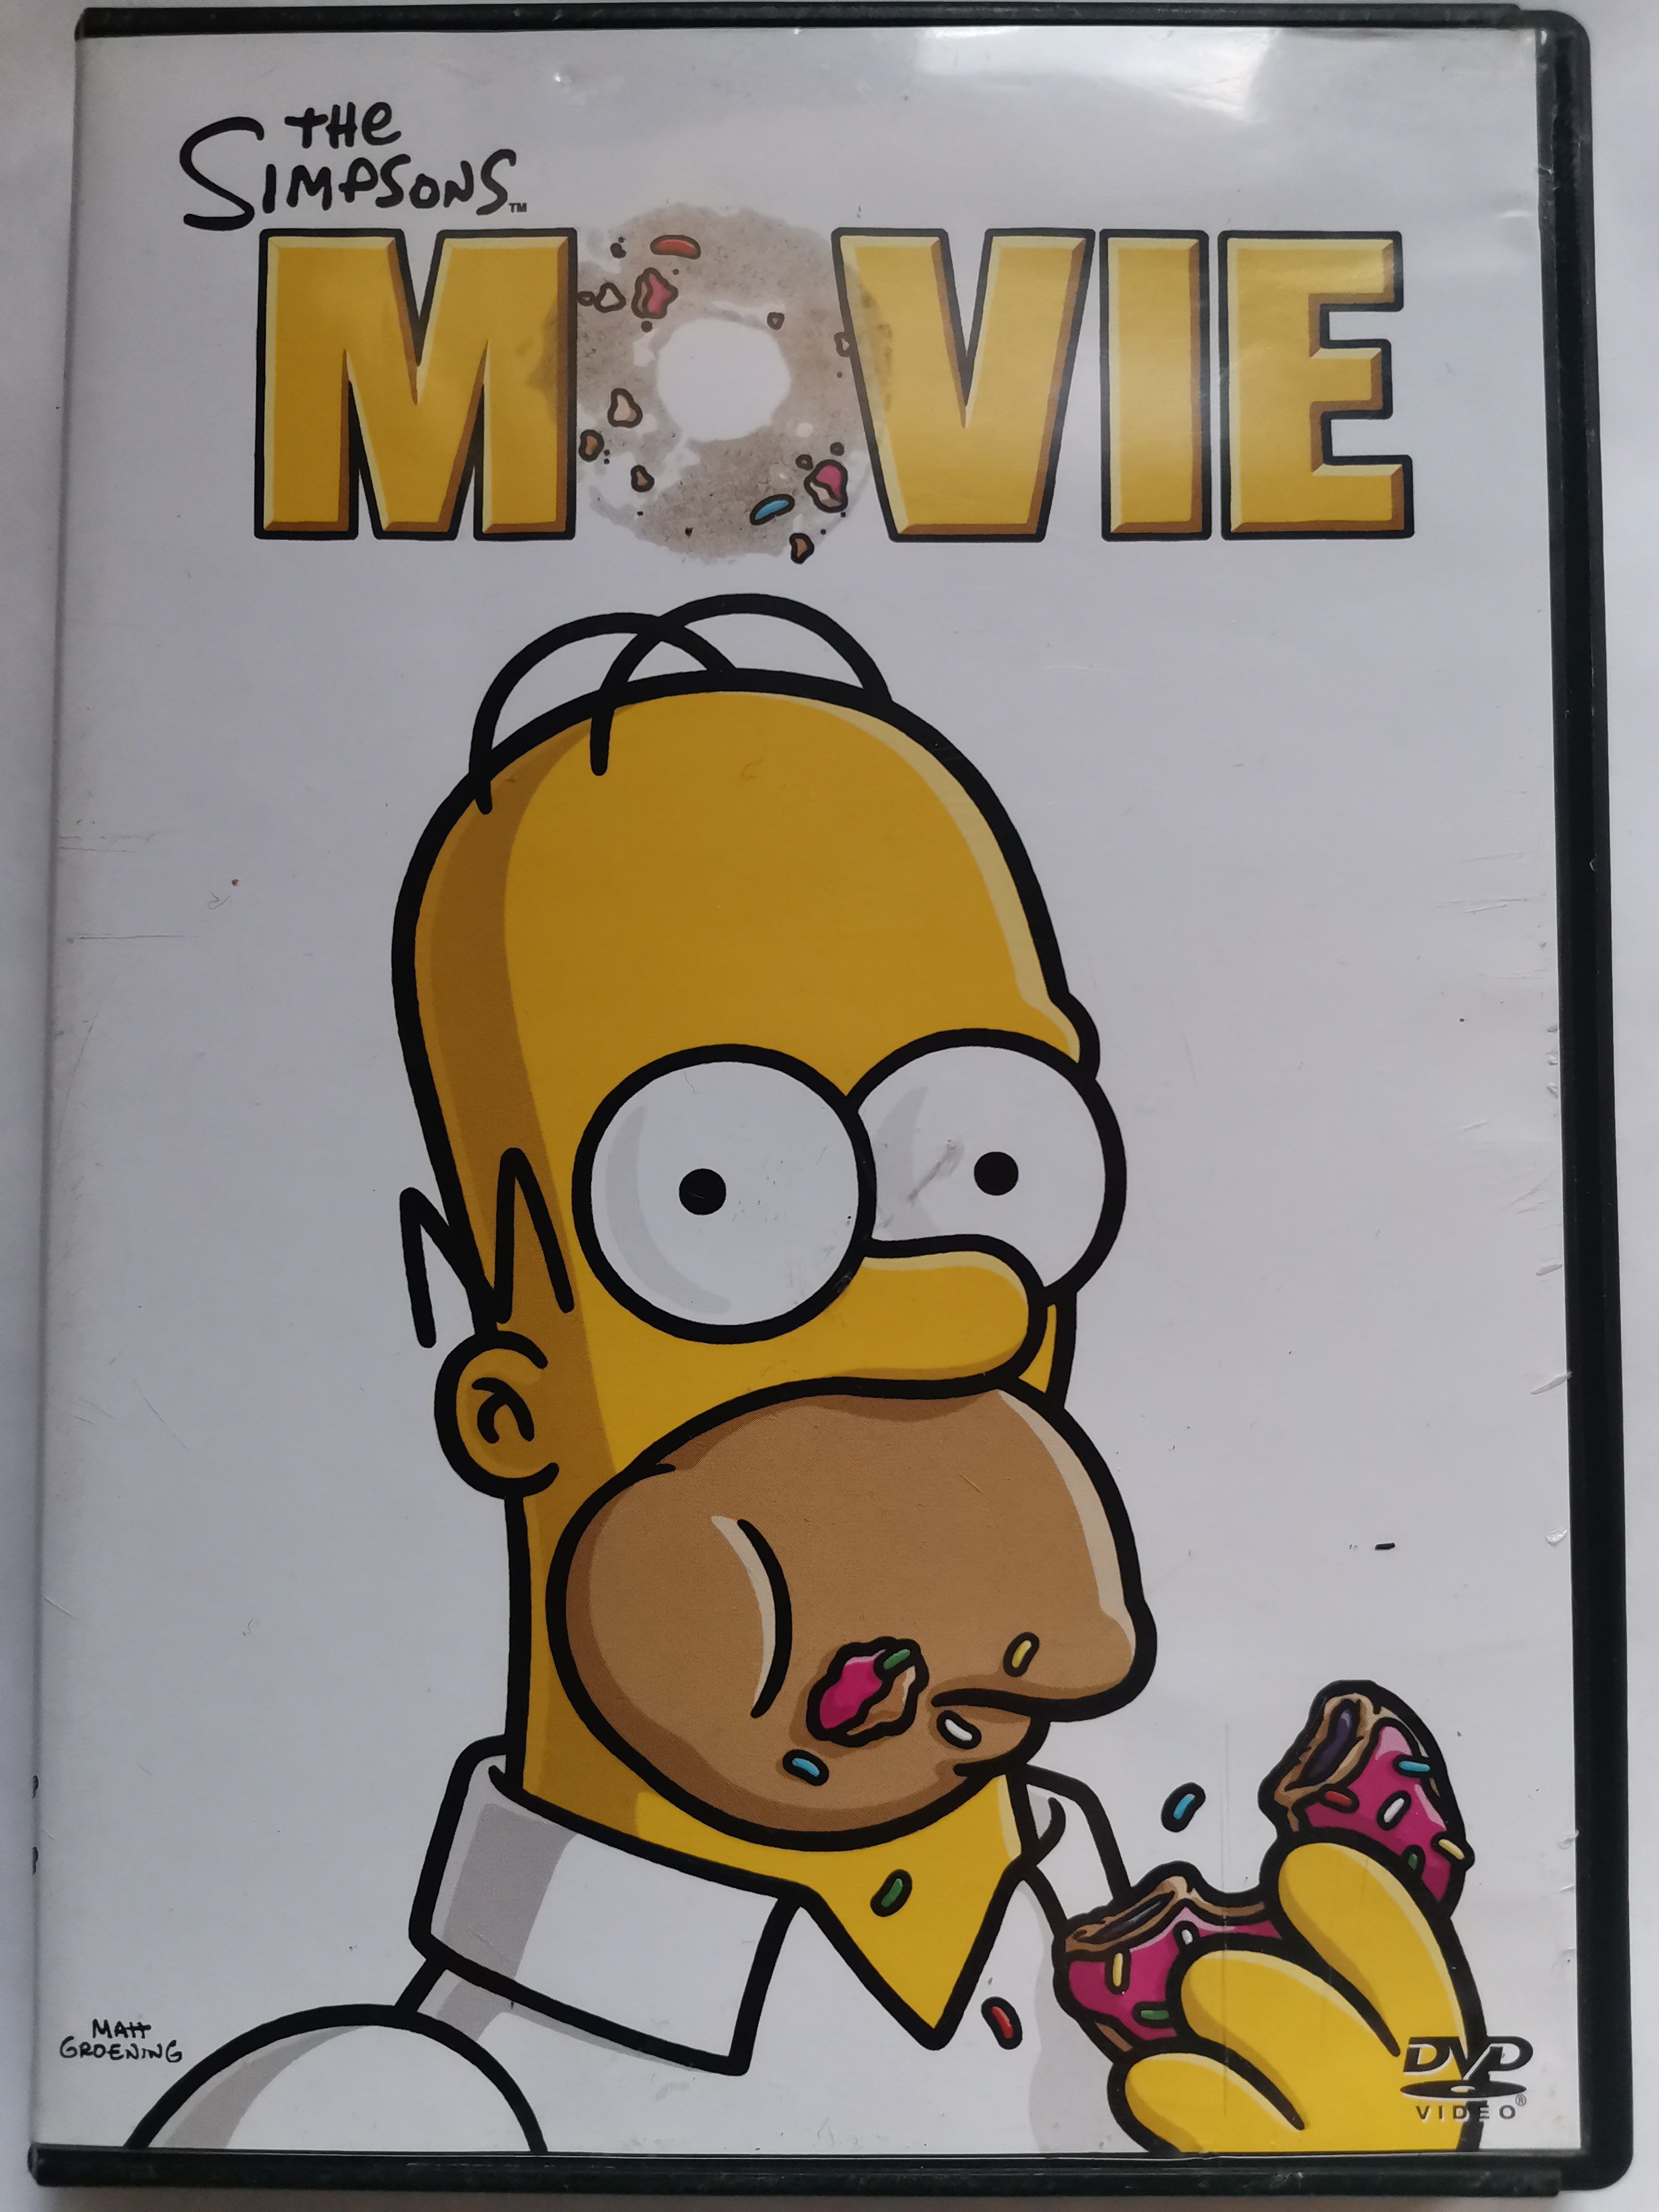 Osta tuote The Simpsons Movie DVD-elokuva (käytetty) verkkokaupastamme Korhone: Outlet 20% alennuksella koodilla KORHONE